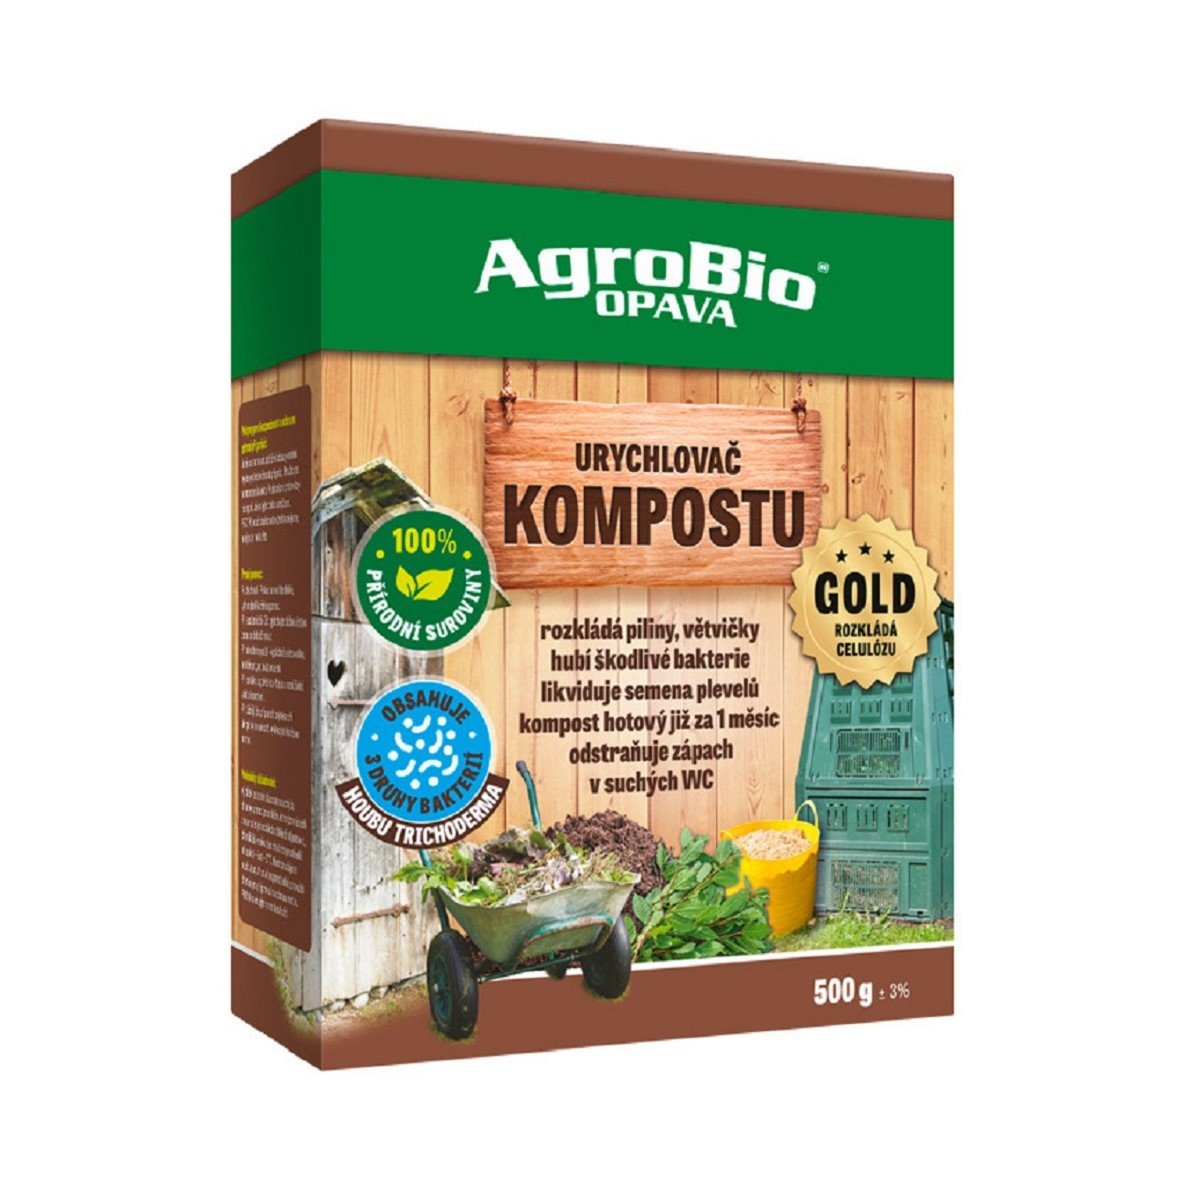 Urychlovač kompostu Gold - AgroBio - prodej stimulátorů - 500 g